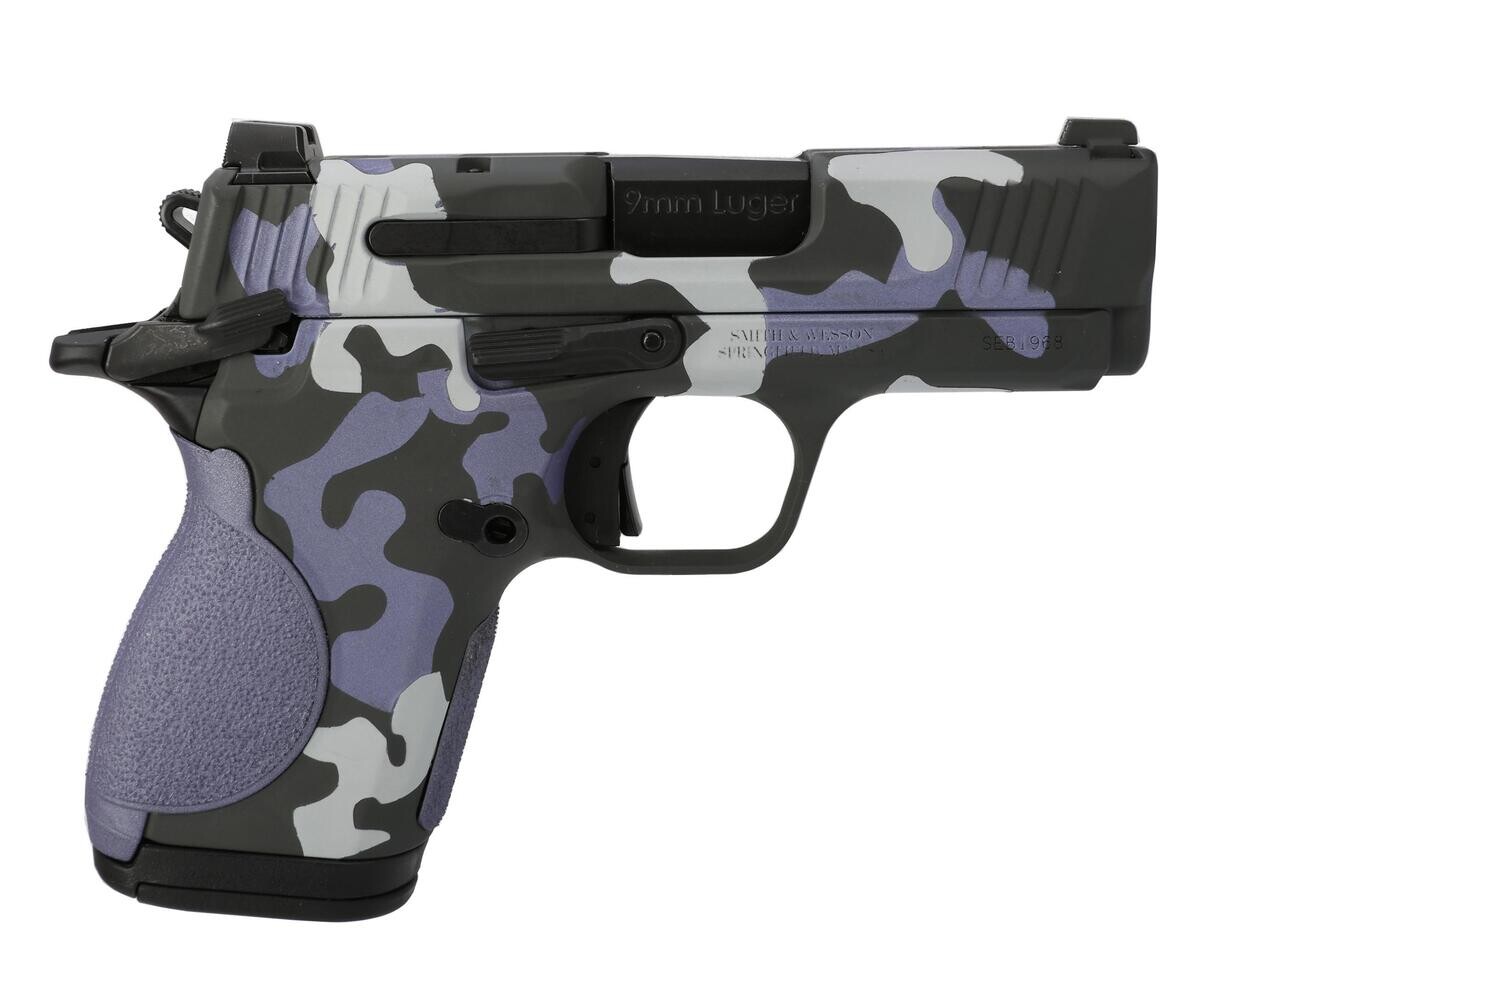 Smith and Wesson Csx 9mm 3.1" Purple Camo 12+1